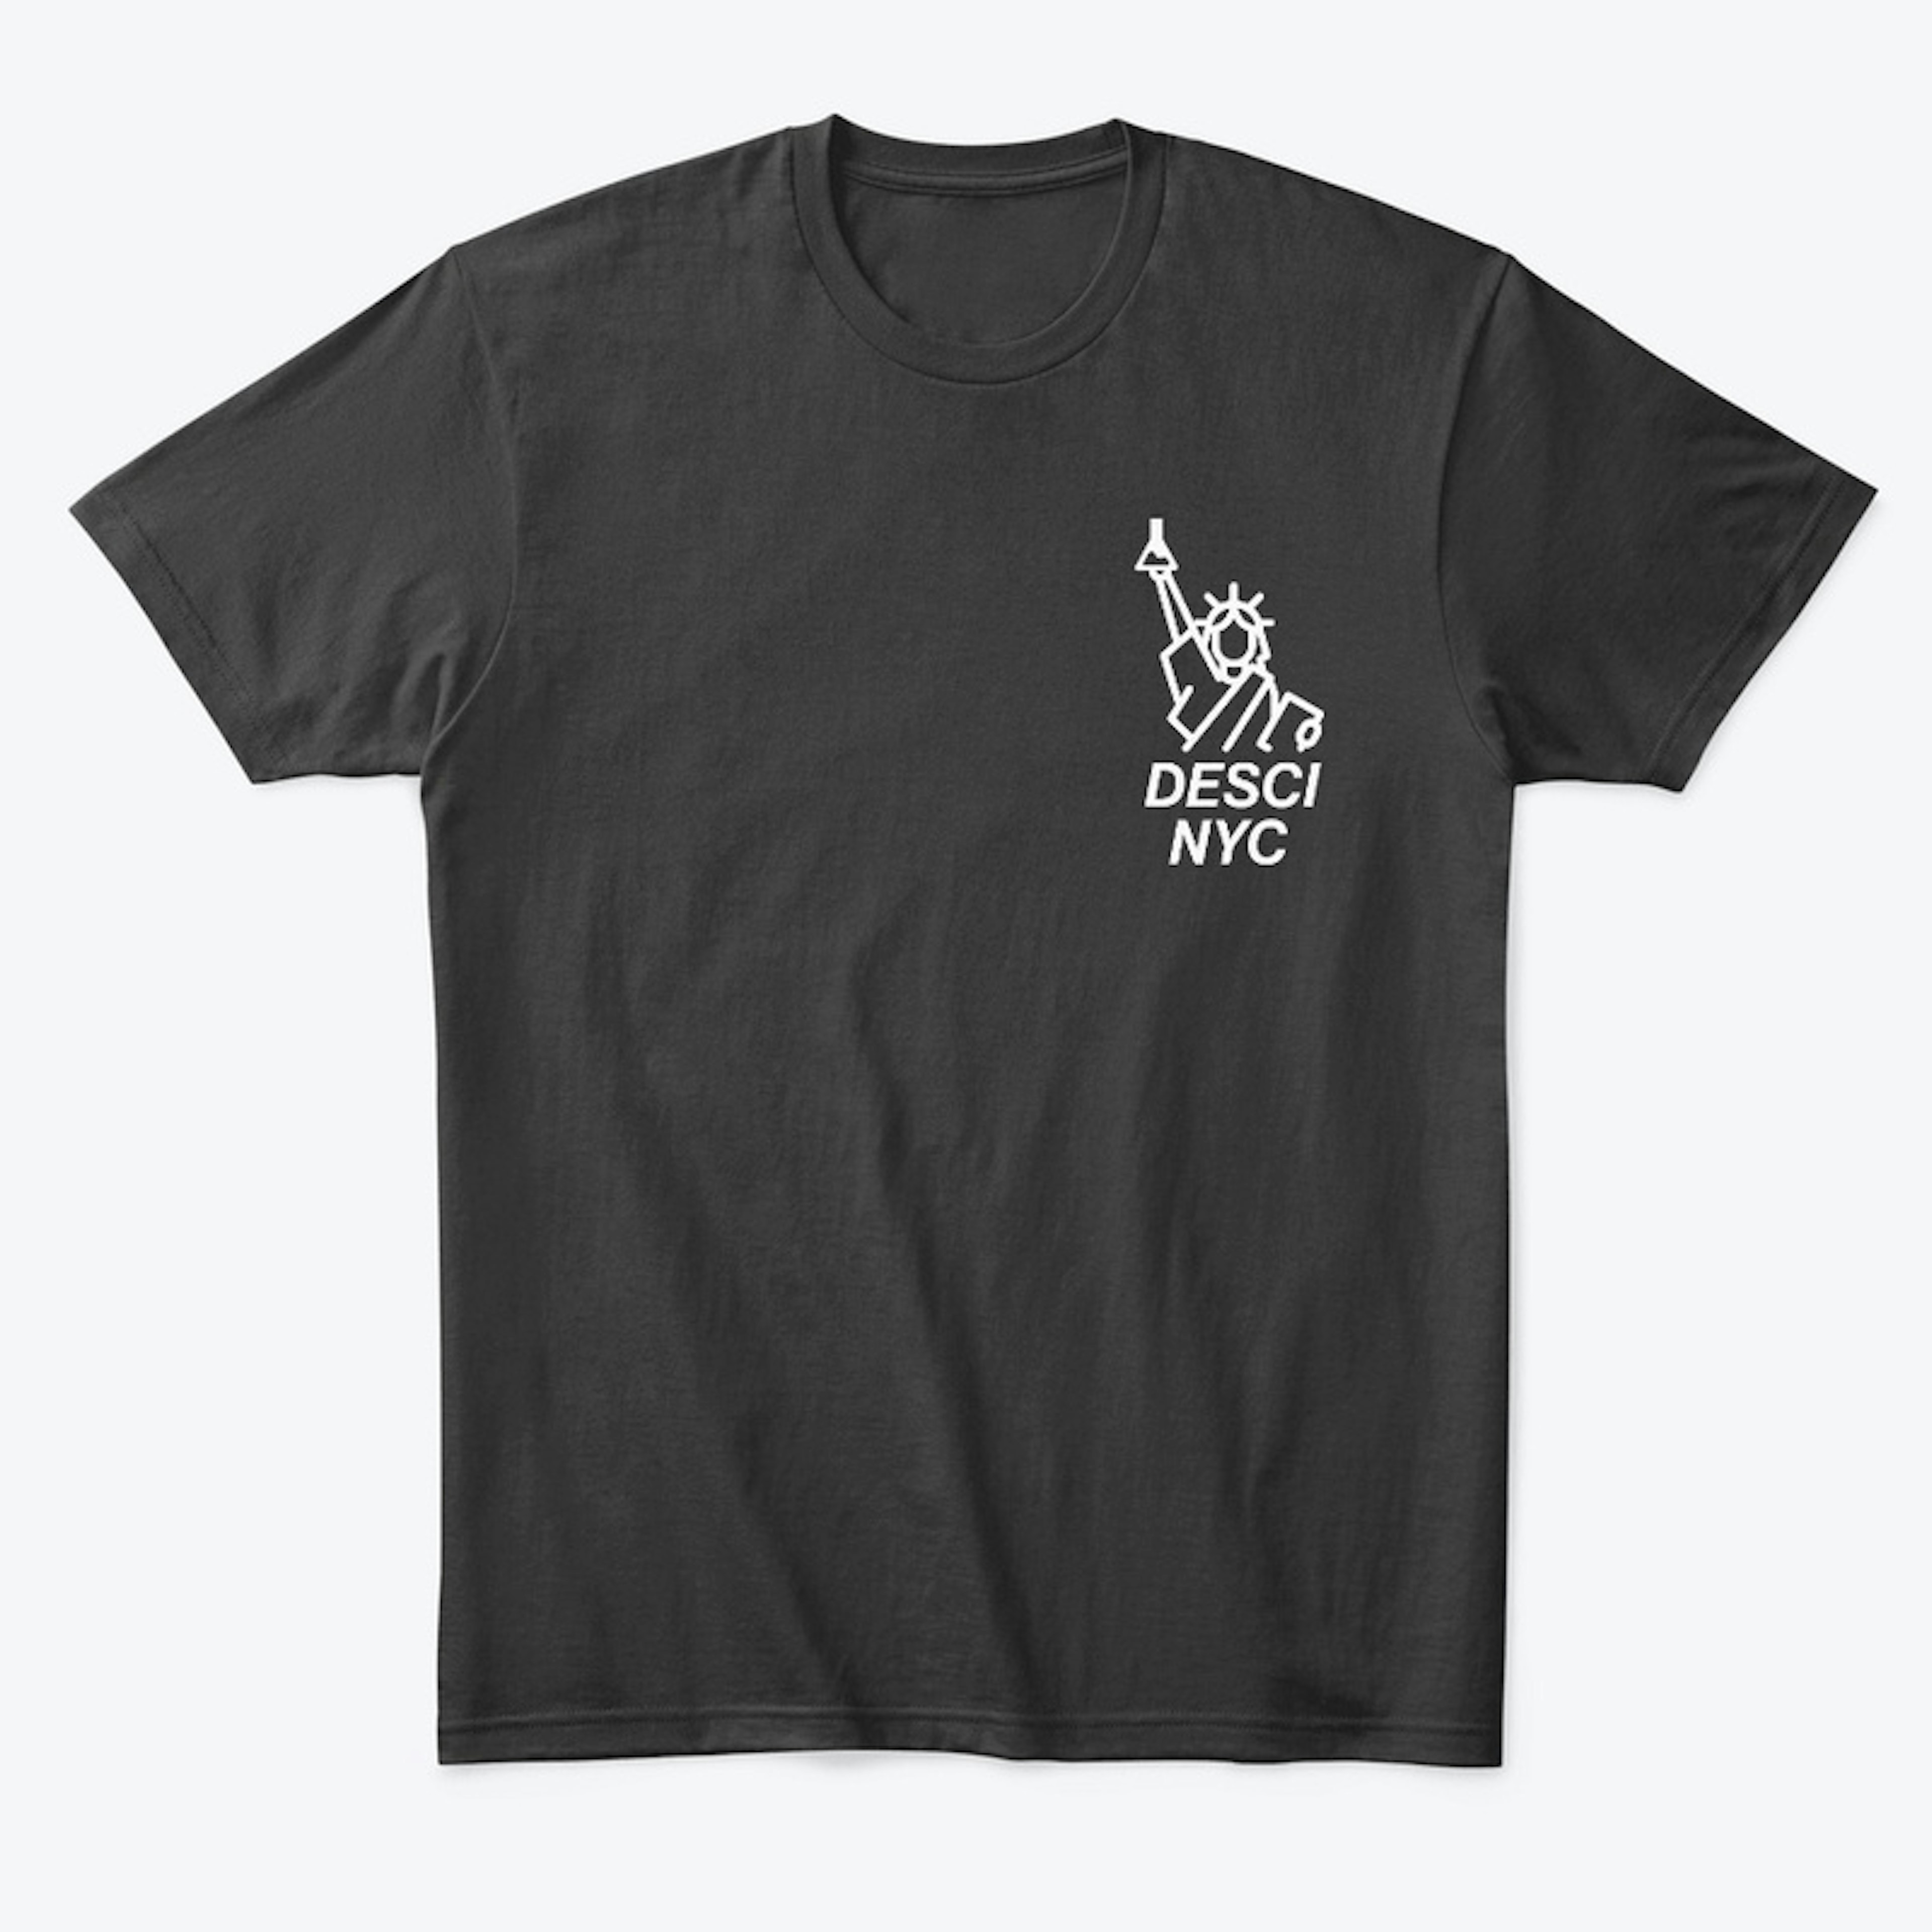 DeSciNYC T-Shirt